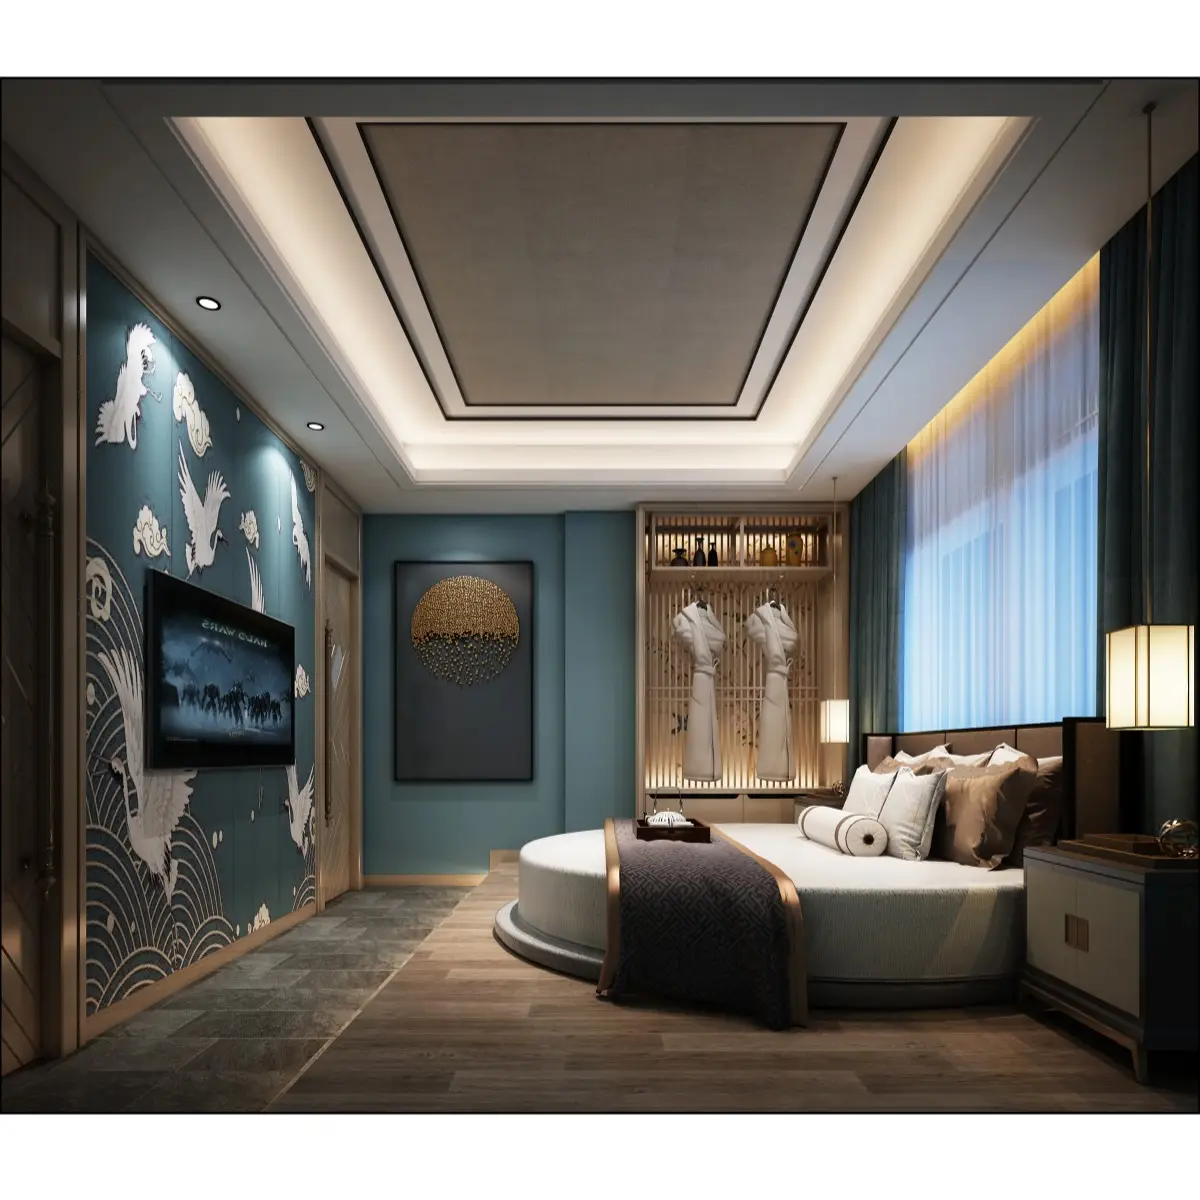 Mobili per camera da letto dell'hotel su misura Hyatt Marriott 5 stelle quattro stagioni mobili per camere d'albergo di lusso